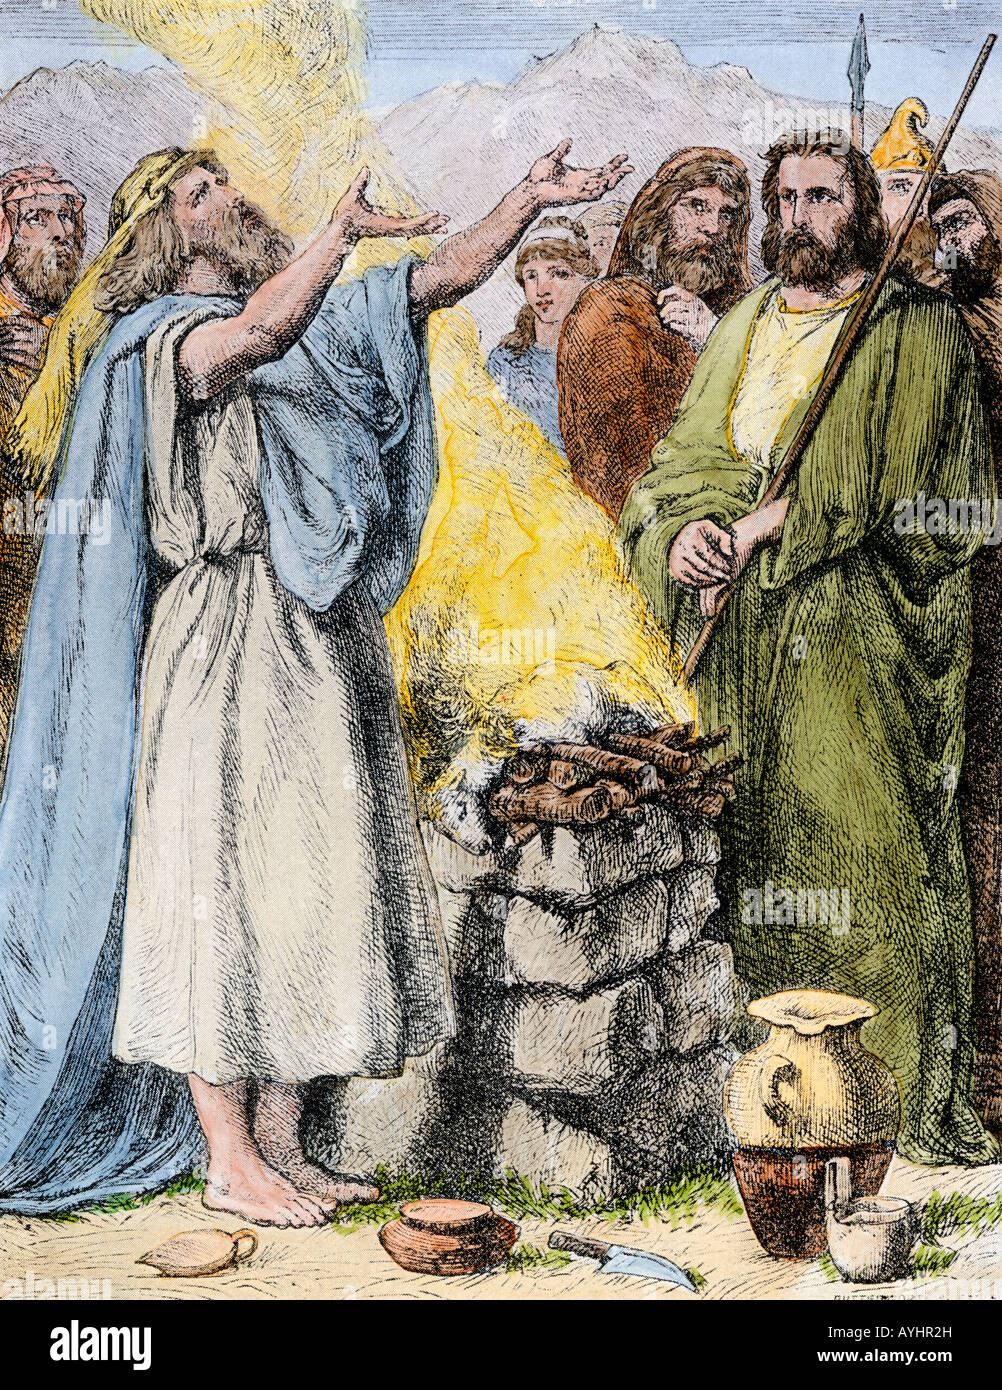 Anciens Hébreux offrant un agneau sacrificiel. La main, d'une illustration de demi-teinte Banque D'Images